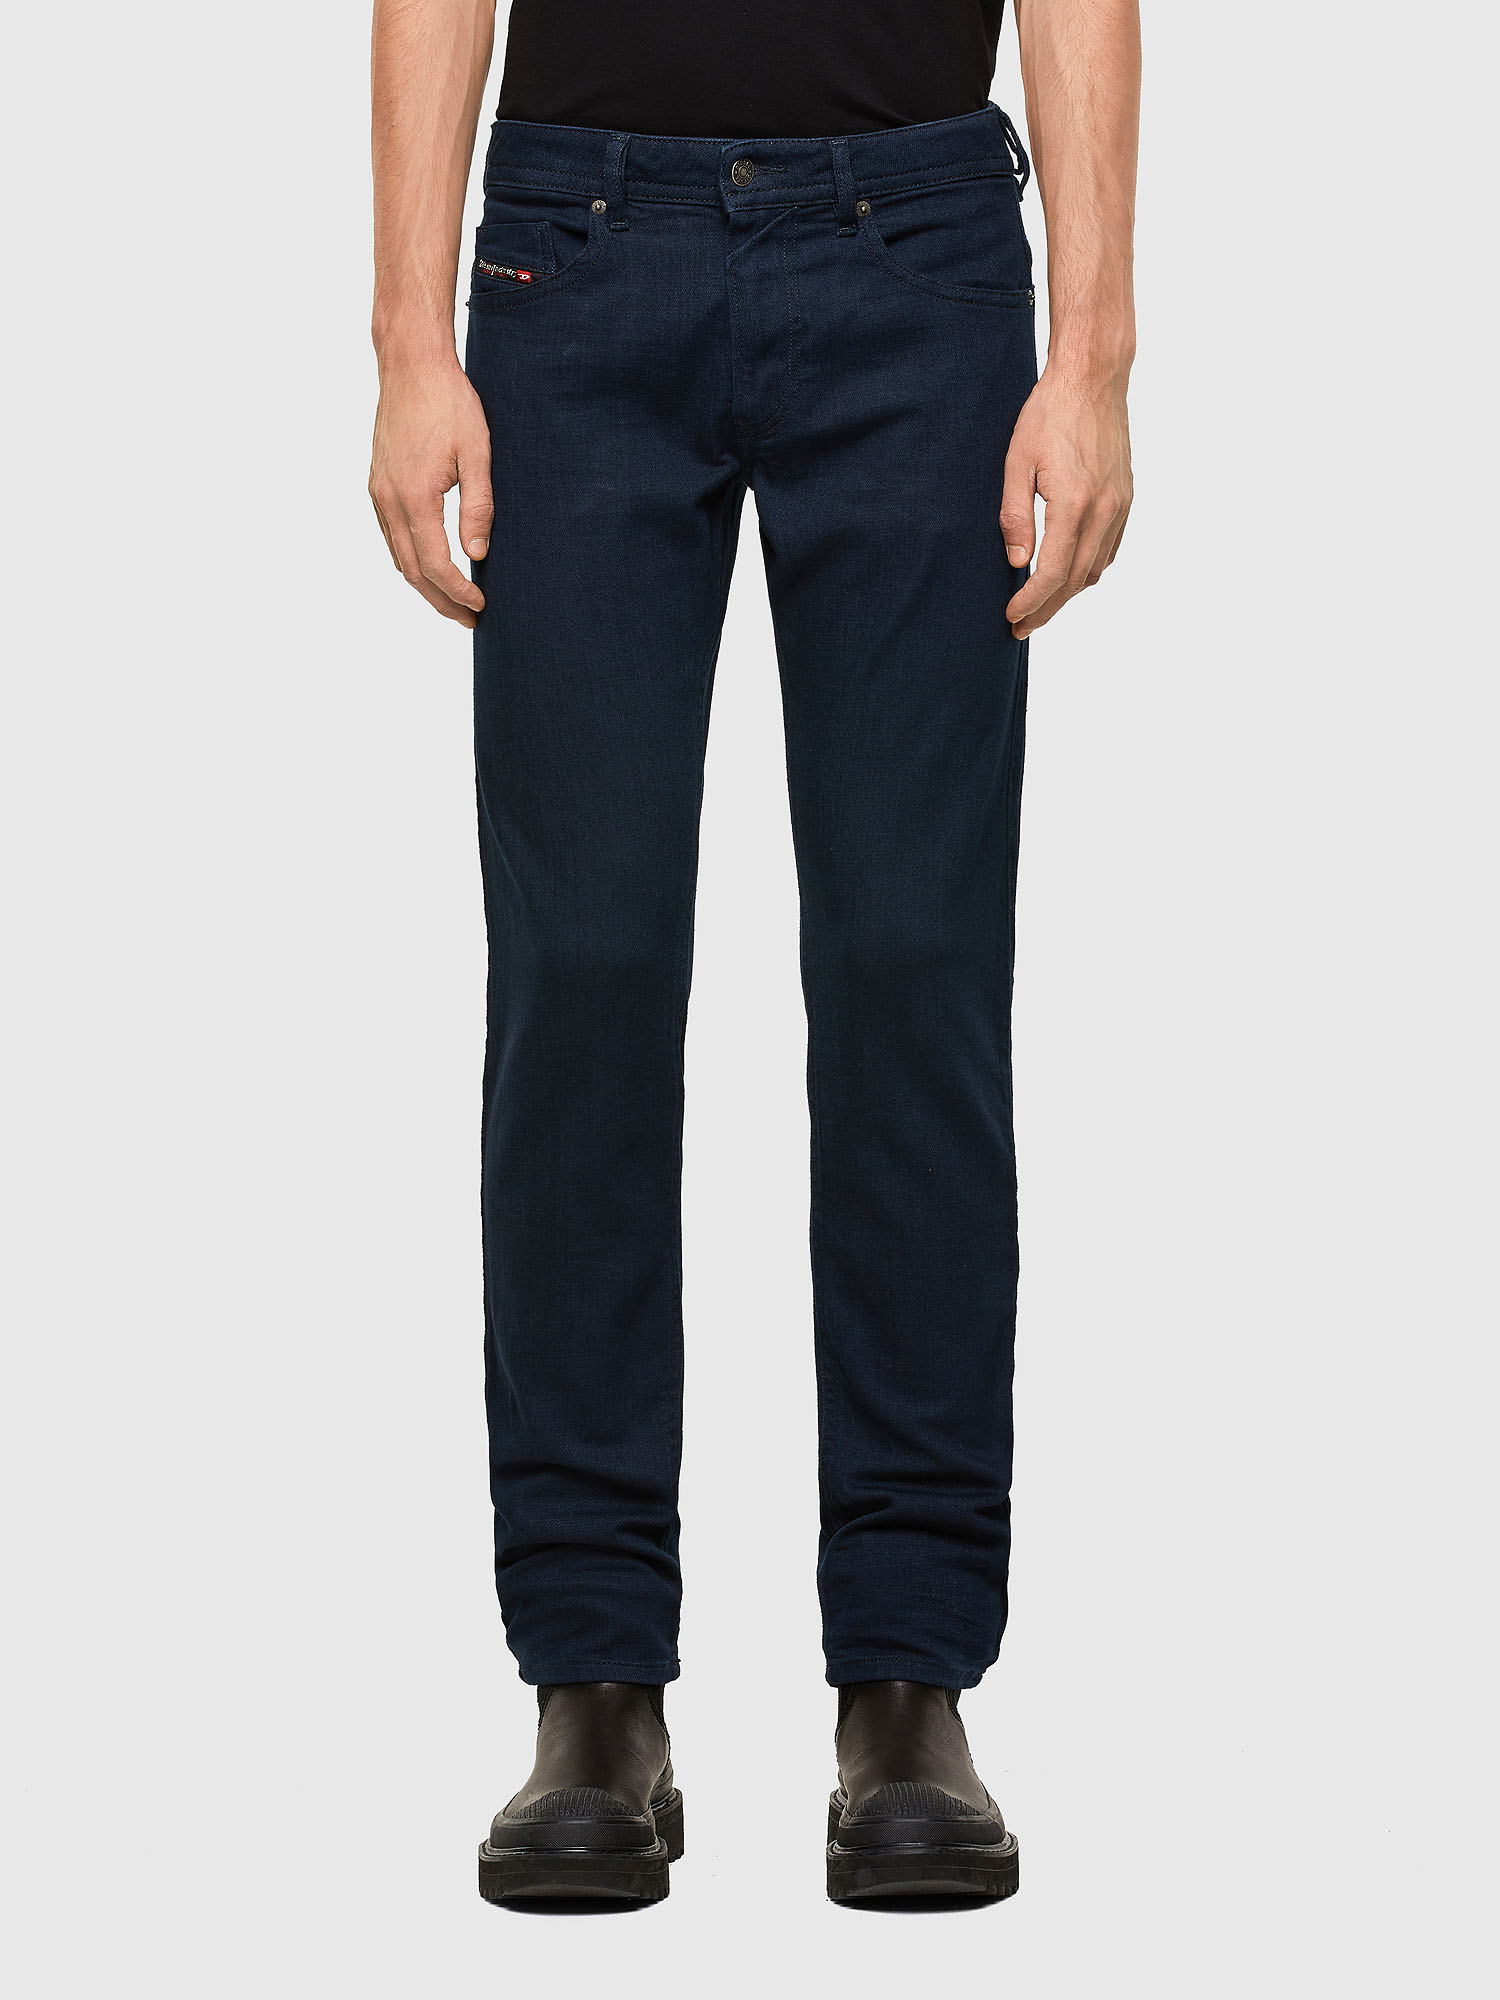 Afslachten Aangepaste fusie Thommer 085AQ Man: Slim Dark blue Jeans | Diesel